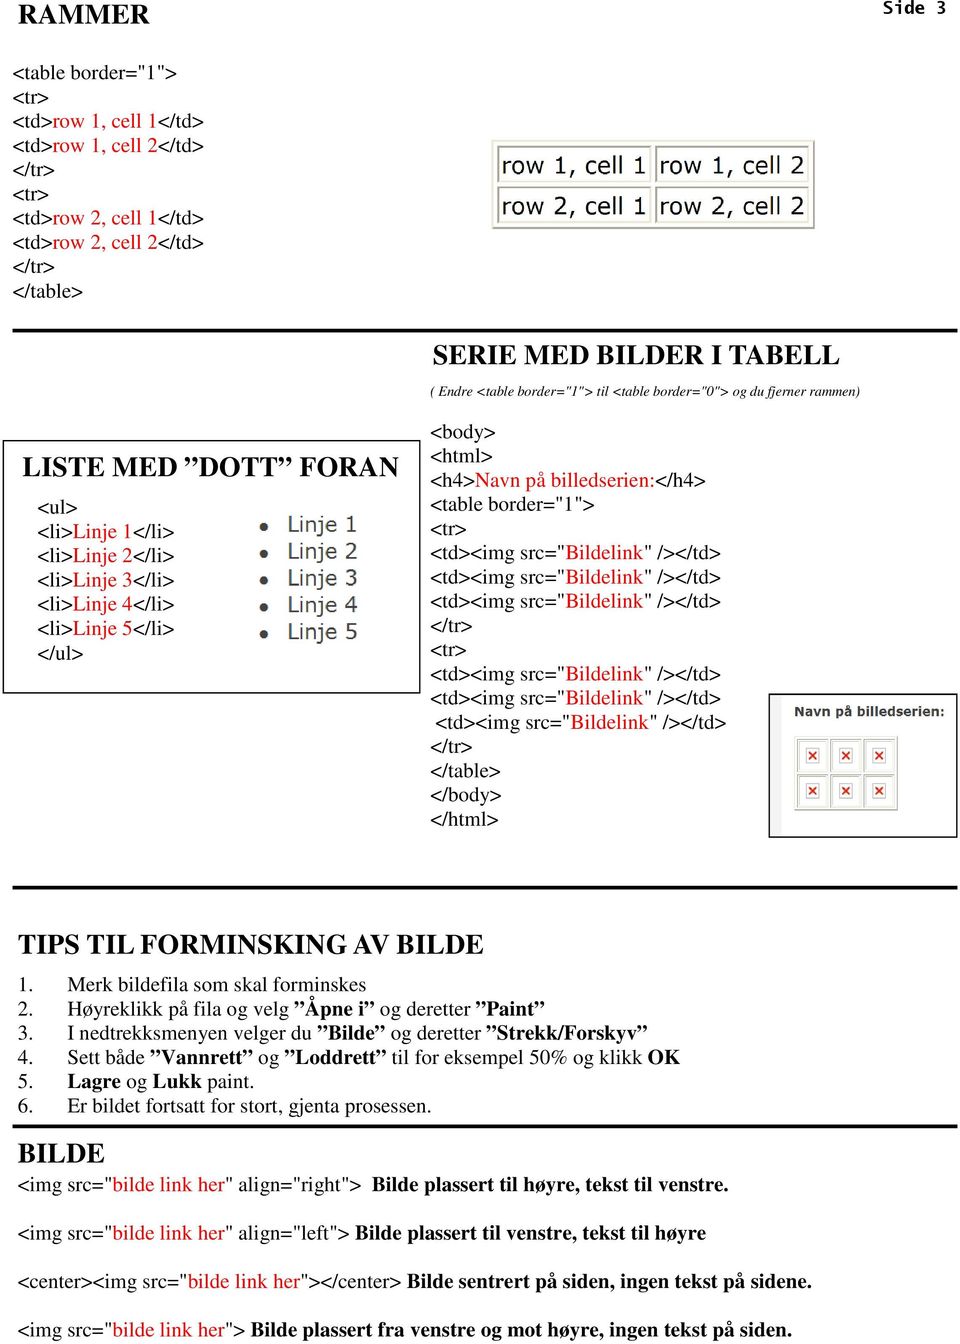 <table border="1"> </table> </body> </html> TIPS TIL FORMINSKING AV BILDE 1. Merk bildefila som skal forminskes 2. Høyreklikk på fila og velg Åpne i og deretter Paint 3.